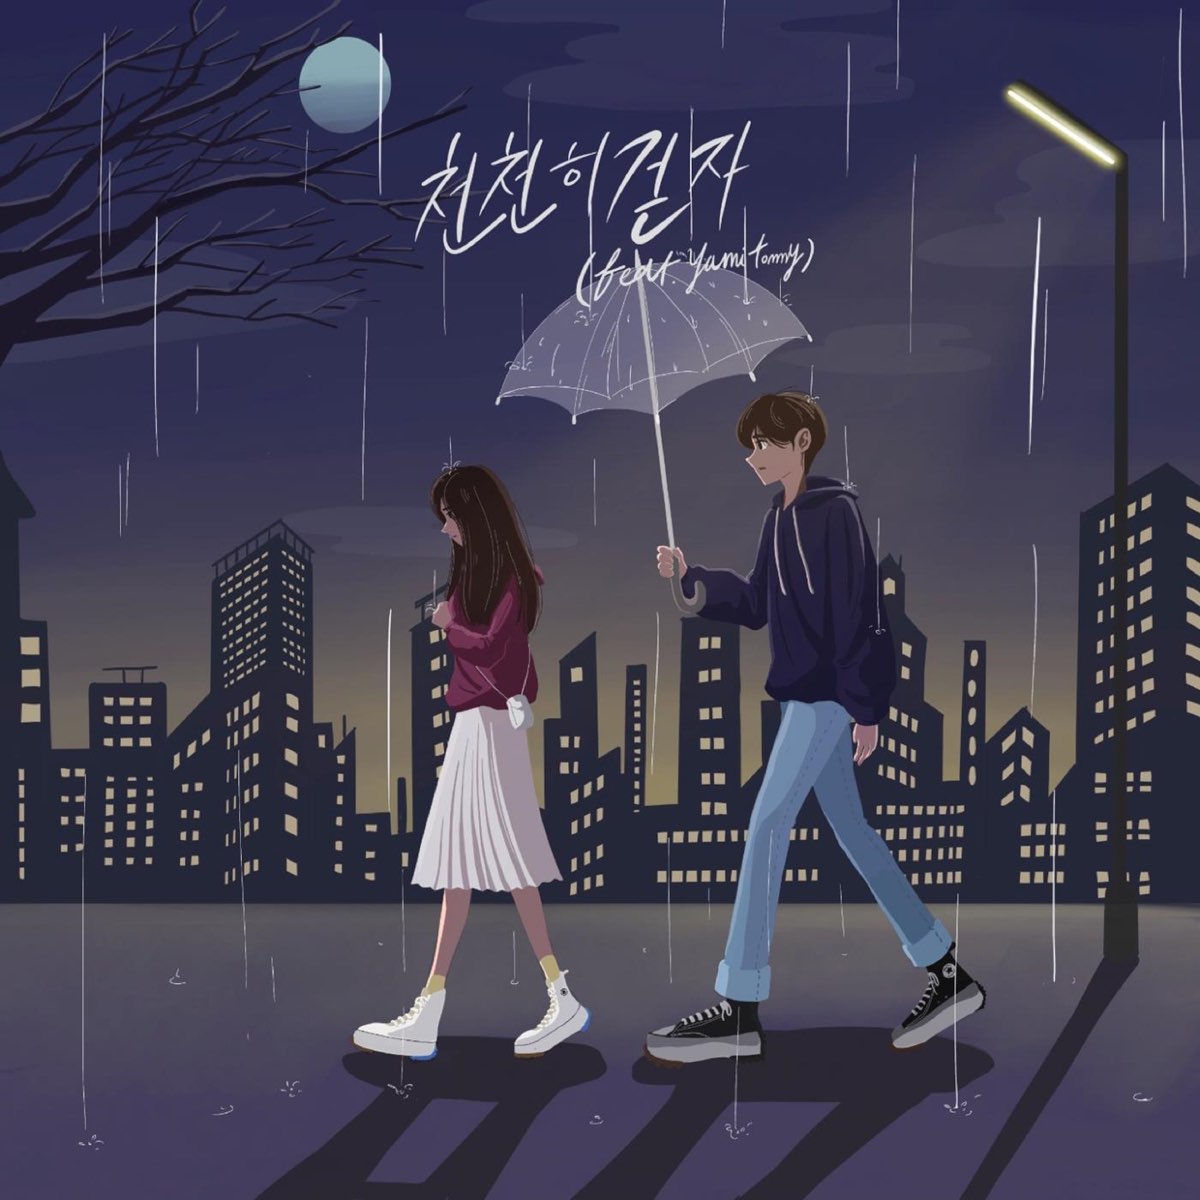 천천히 걷자 (feat. Yami Tommy) - Single by Lyon on Apple Music